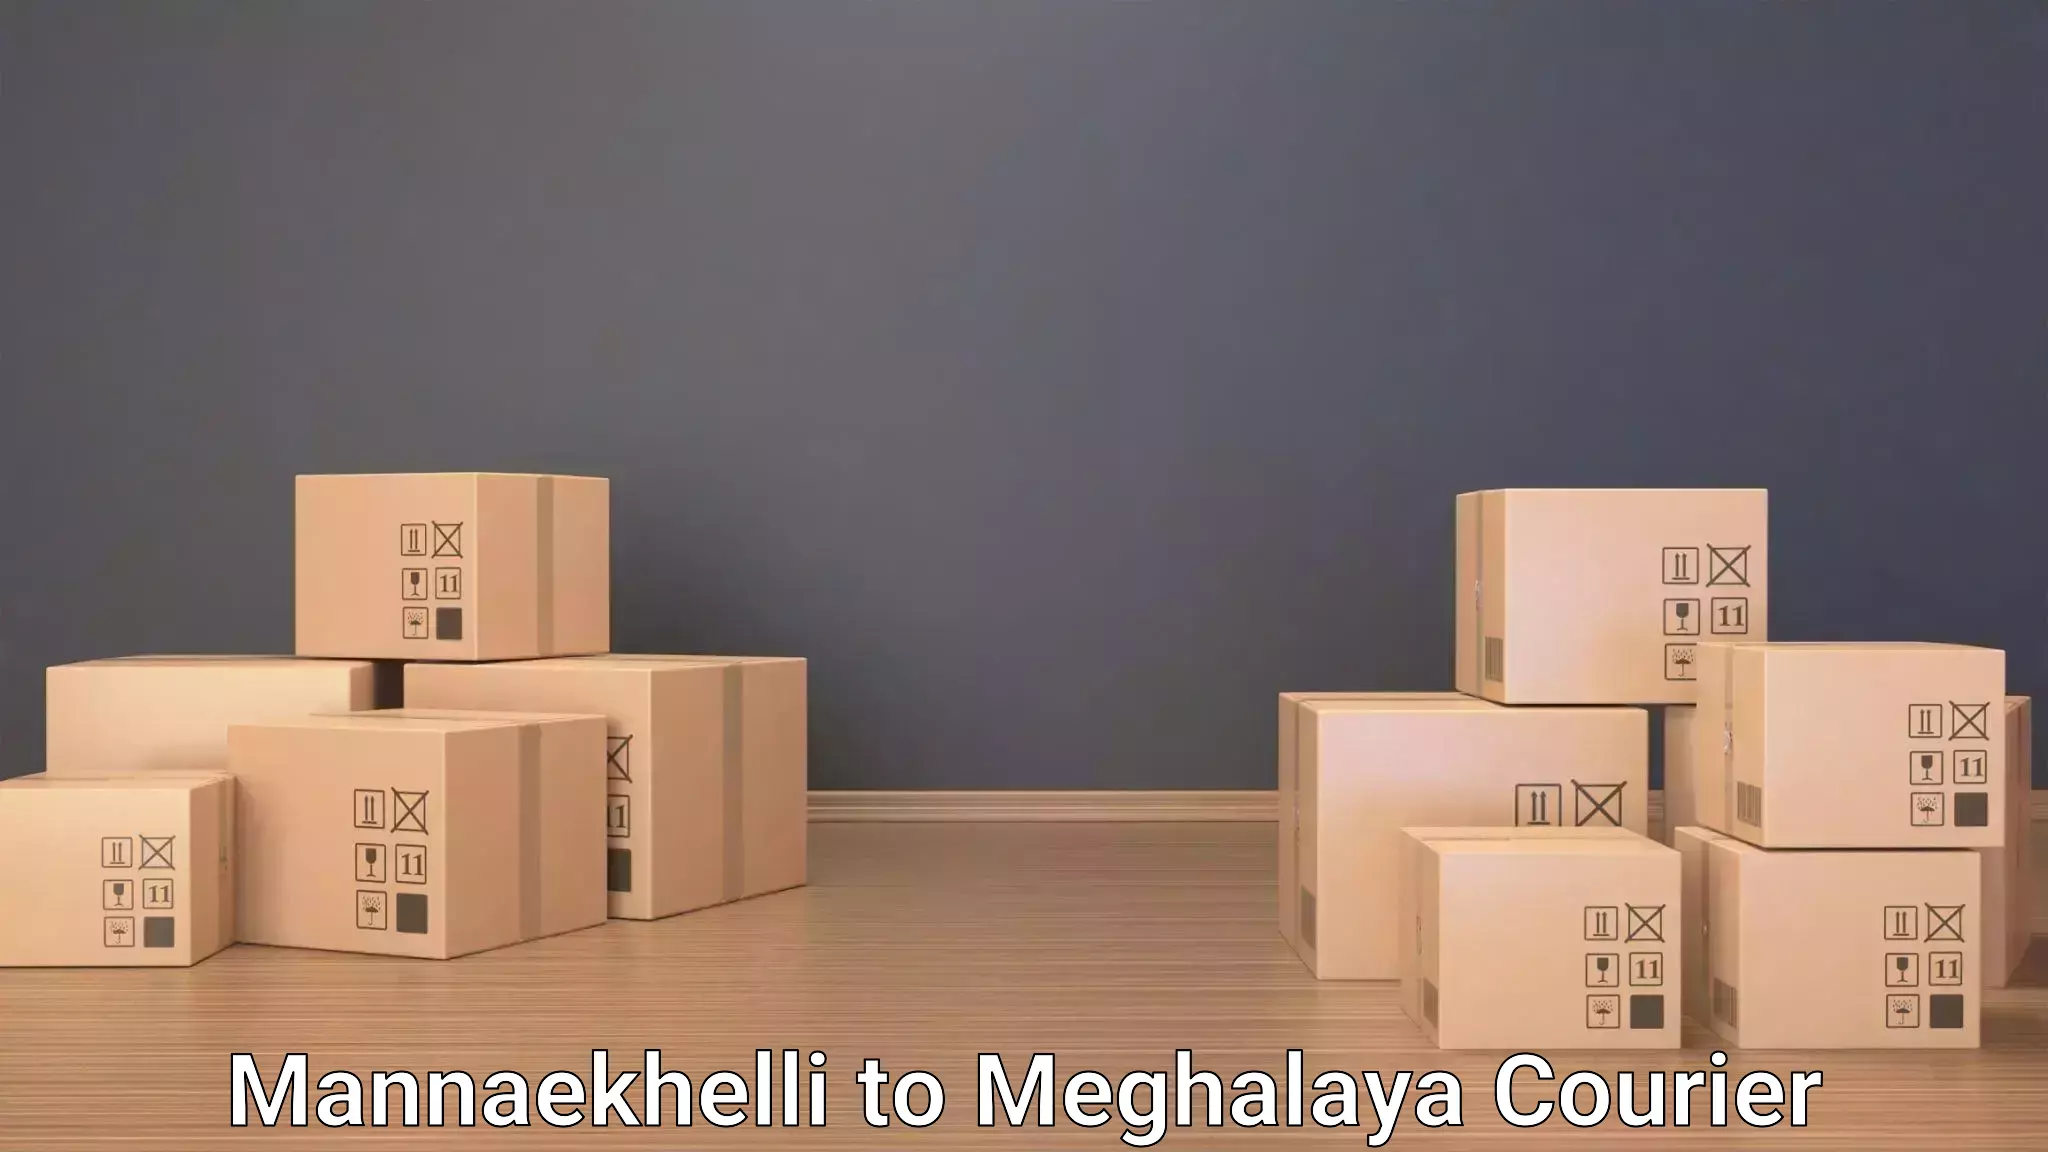 Luggage transport service Mannaekhelli to Meghalaya